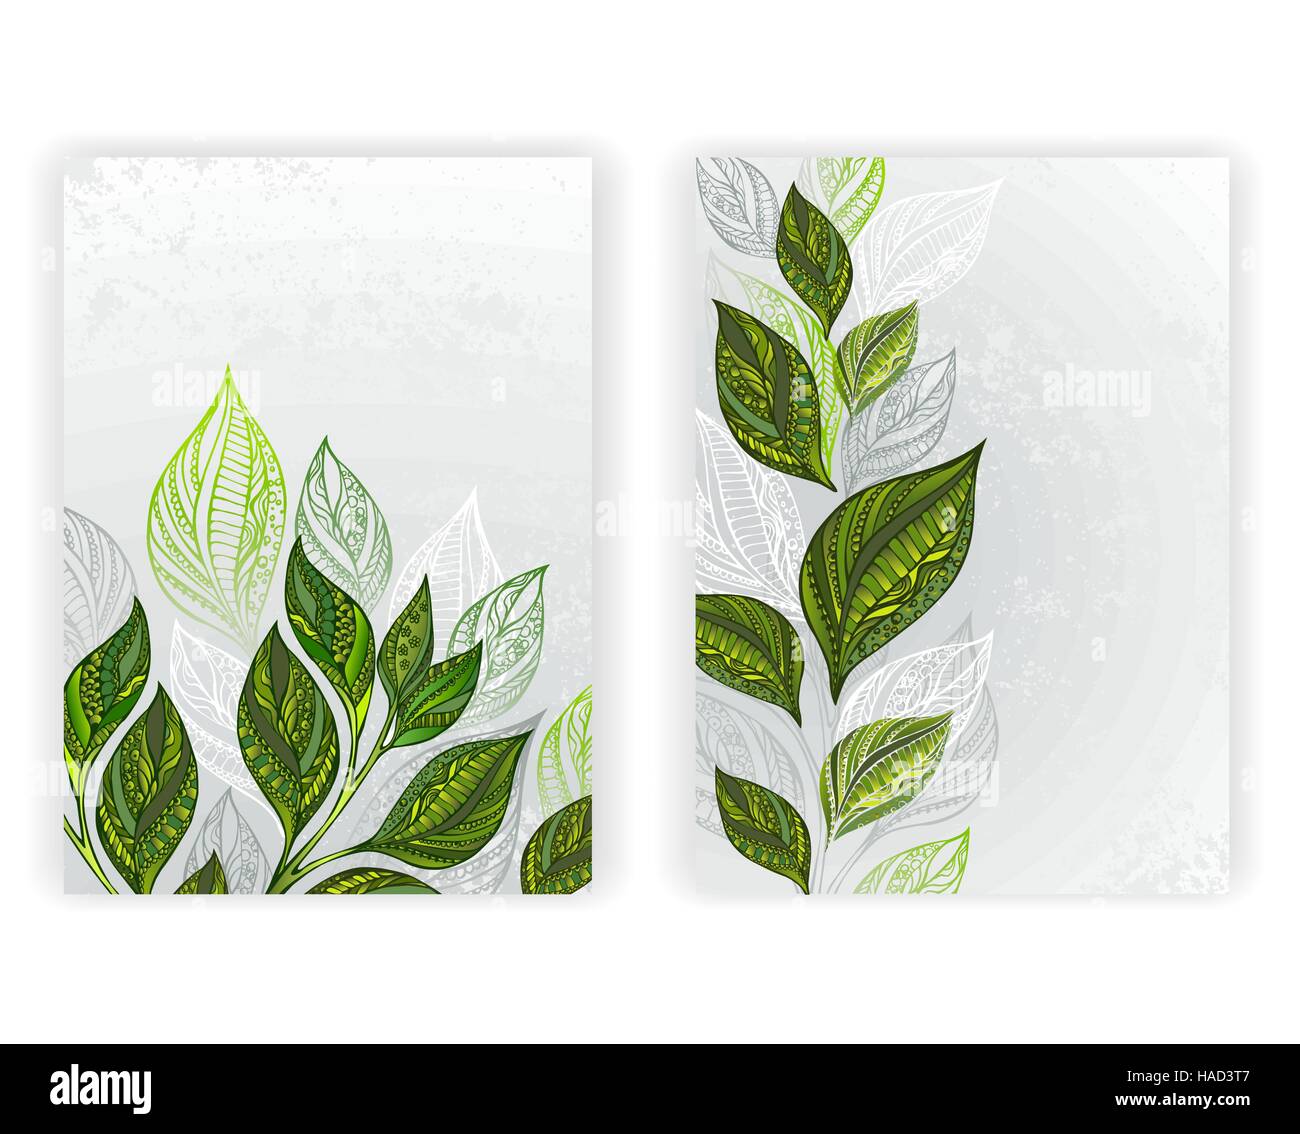 Design mit gemusterten, grüne und graue Blätter Tee auf einem grauen Hintergrund Textur. Tee-Design.  Layout im A4-Format. Stock Vektor